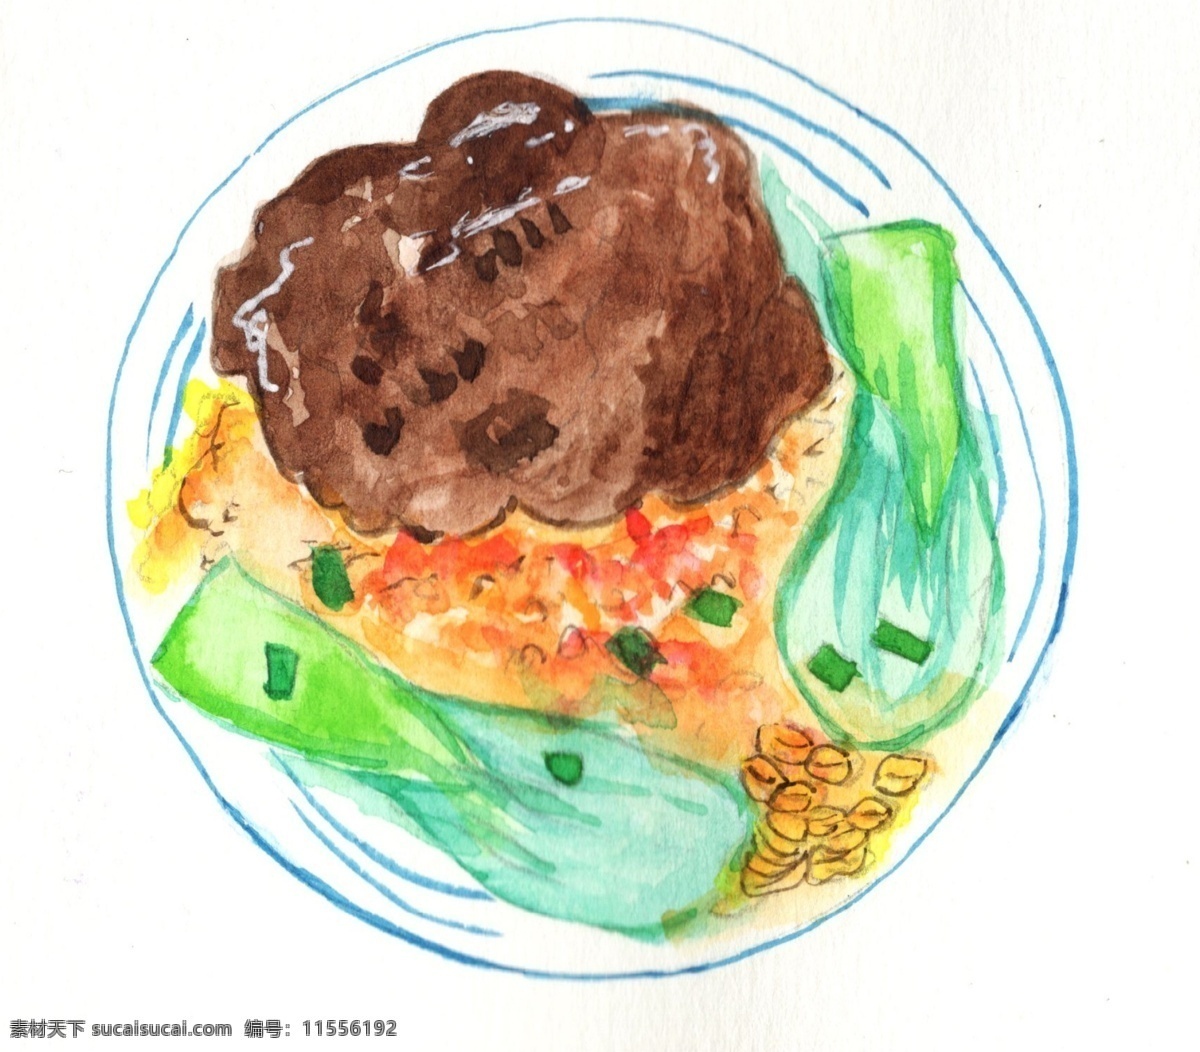 卡通 手绘 香菇 青菜 插画 玉米 鸡蛋 番茄 葱花 酱汁 食物 美食 菜肴 佳肴 菜品 美味 好吃 可口 卡通手绘